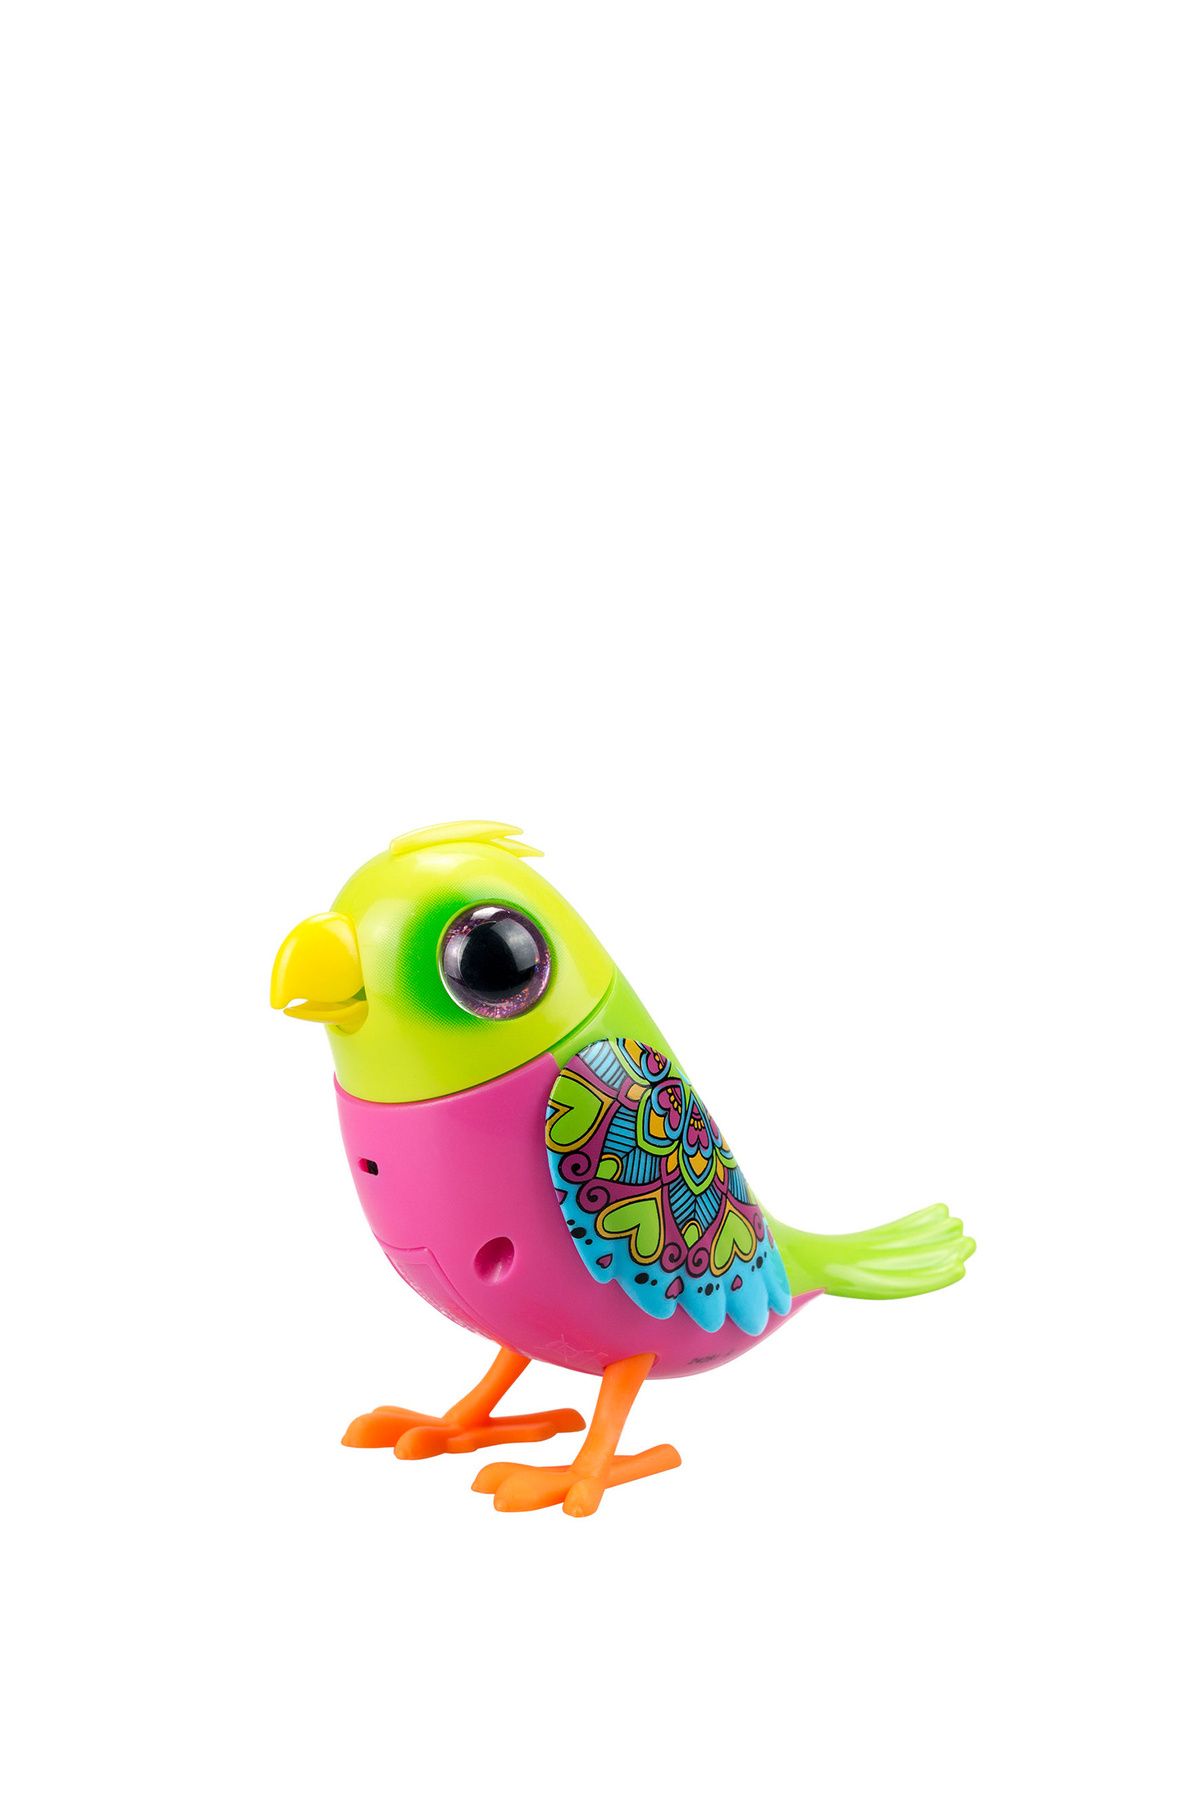 Silverlit Digibirds Series 1 Model 3 Singing Toy Bird